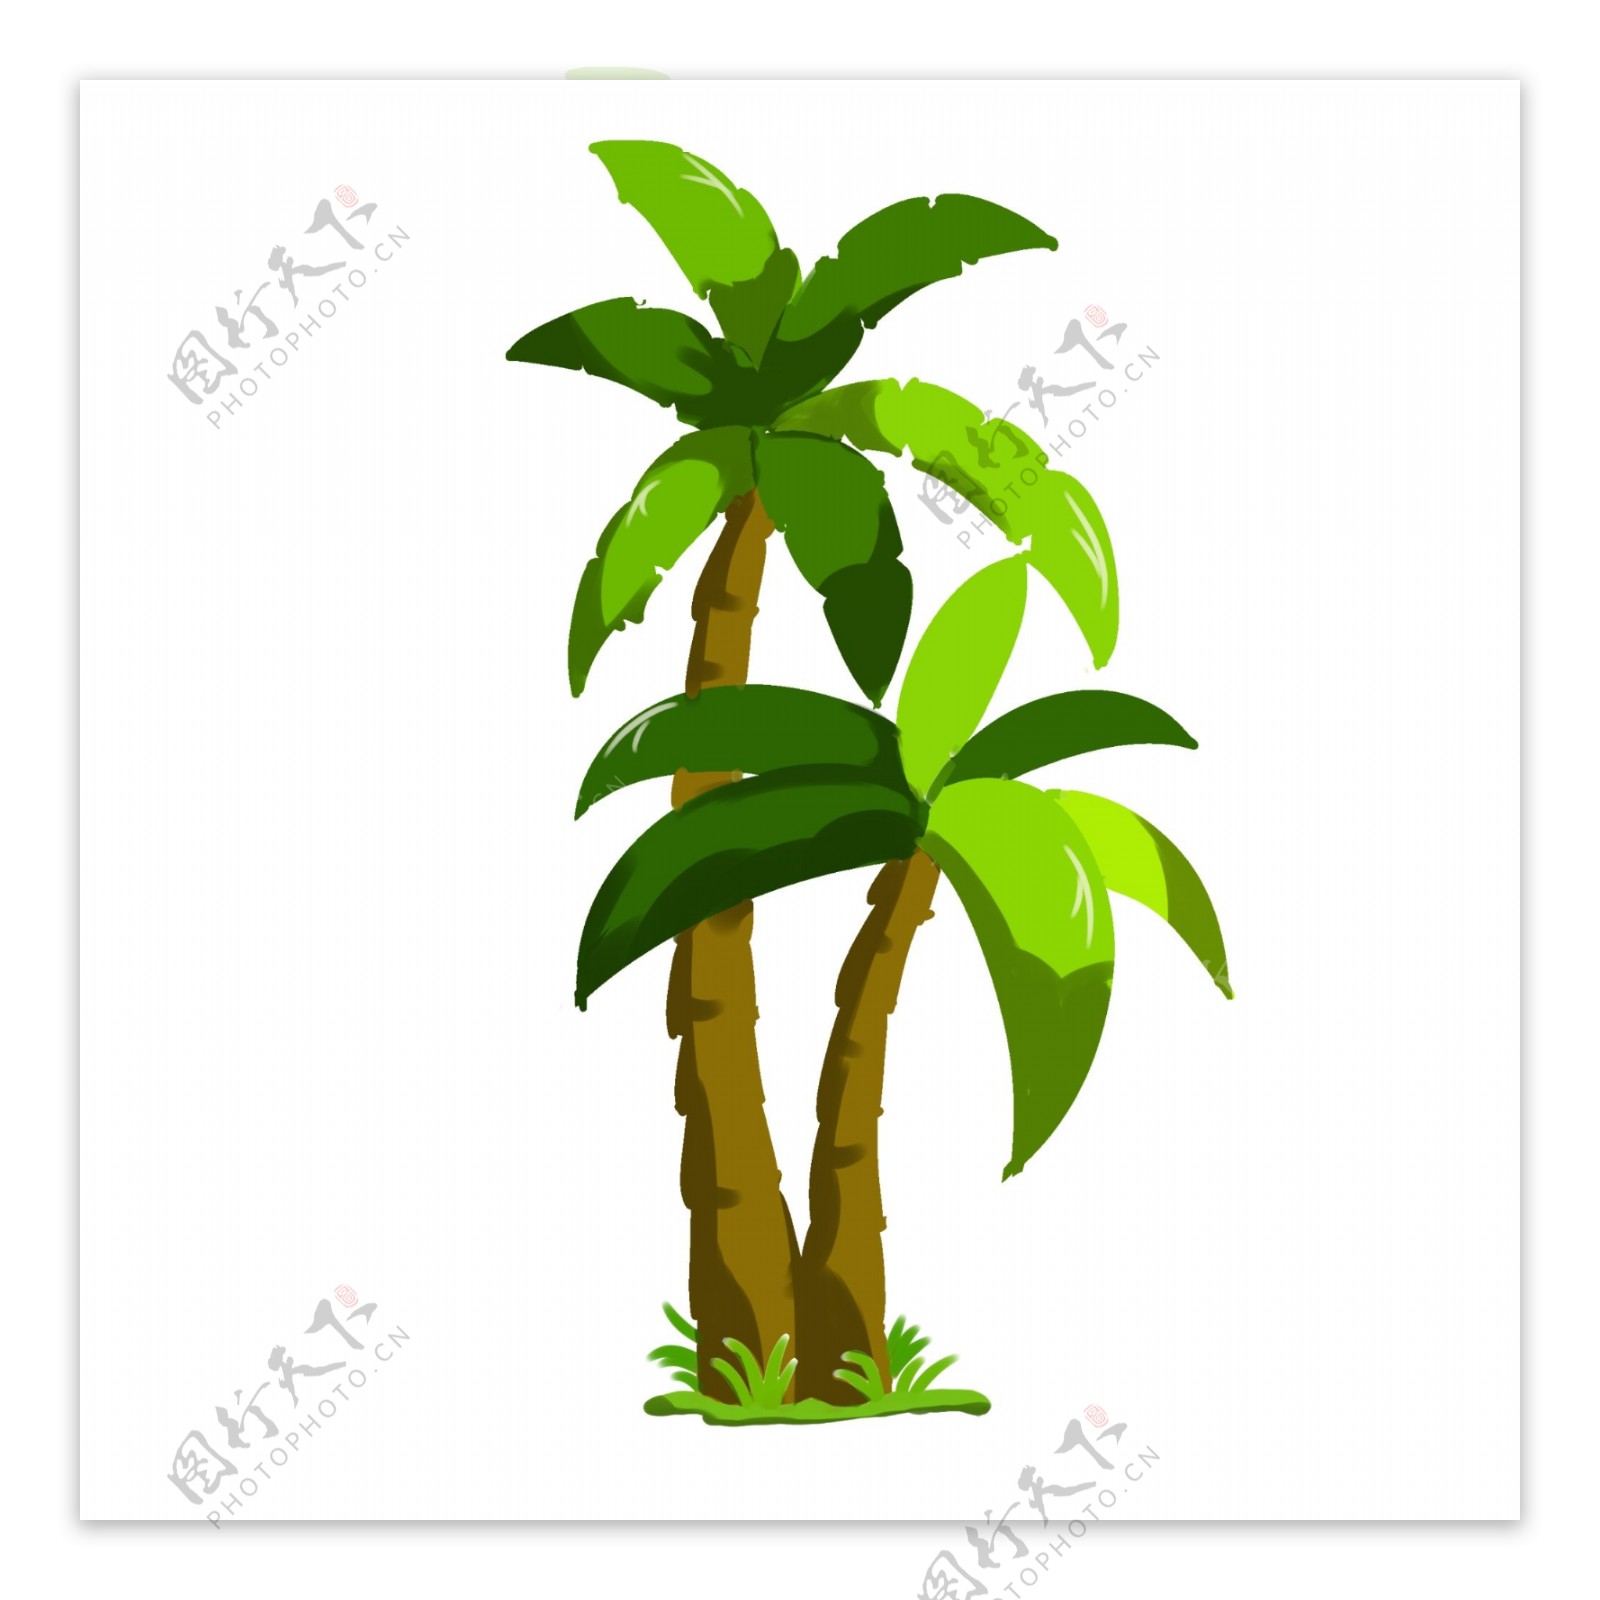 立体绿色椰子树